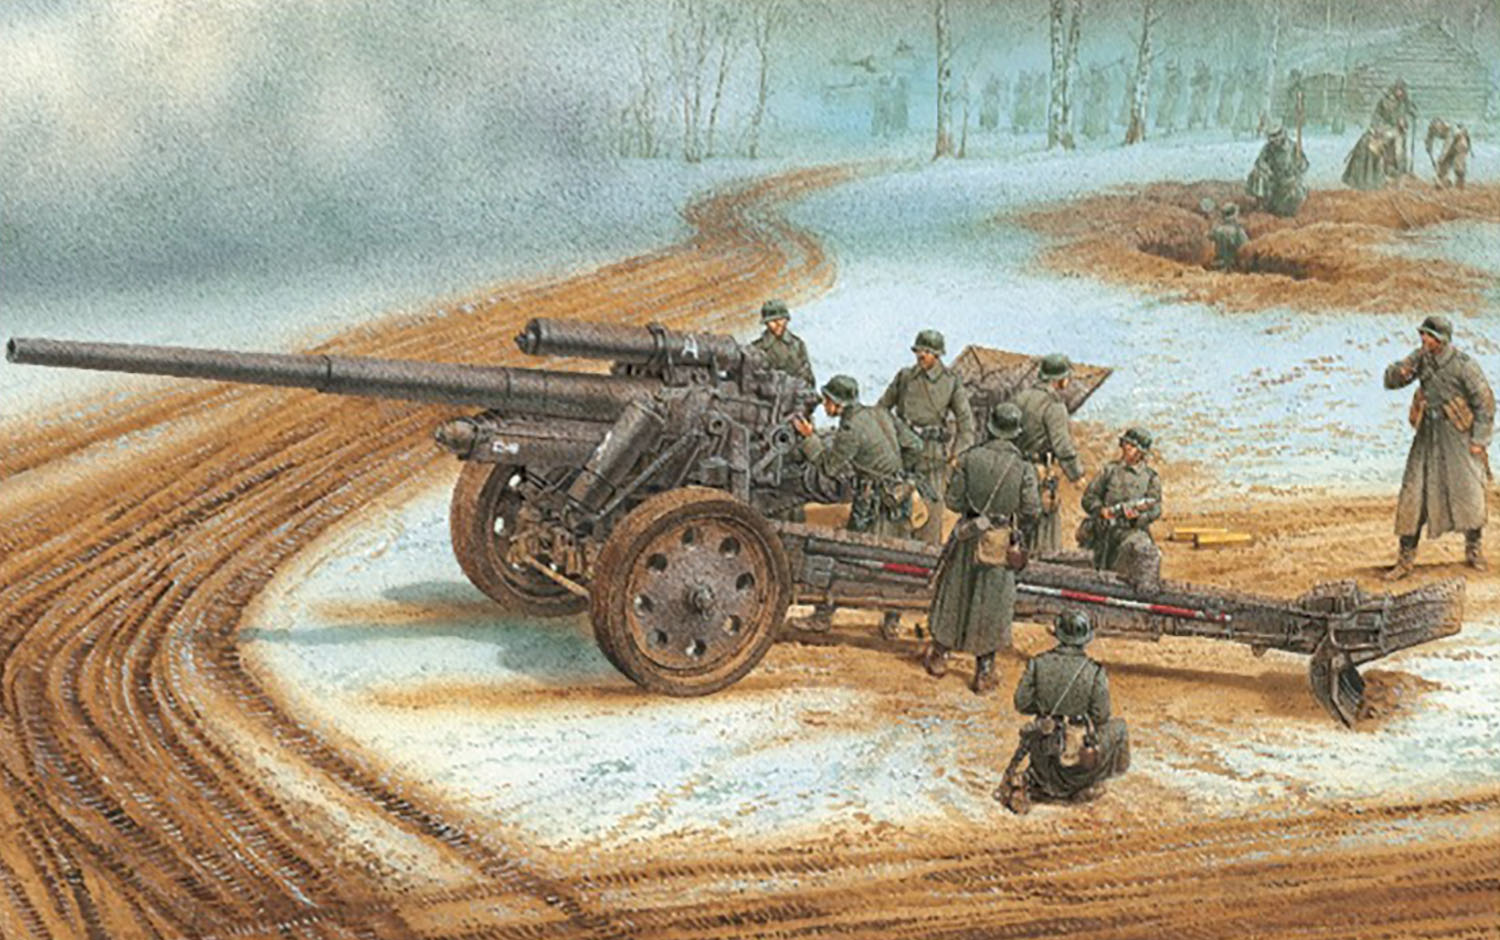 【予約する】　1/35 WW.II ドイツ軍 10cm sK18カノン砲 アルミ砲身/フィギュア付属 - ウインドウを閉じる